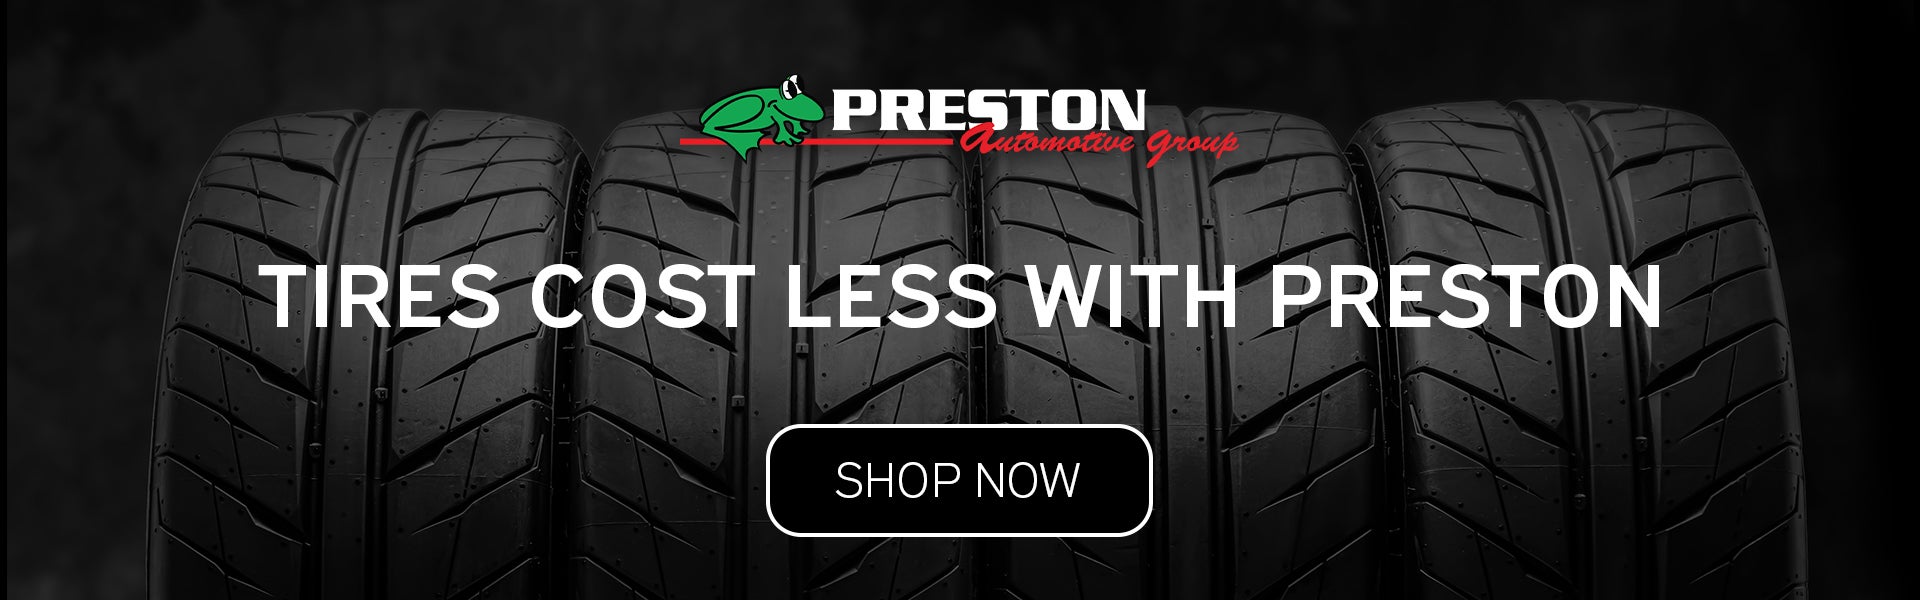 Tire Cost Less with Preston